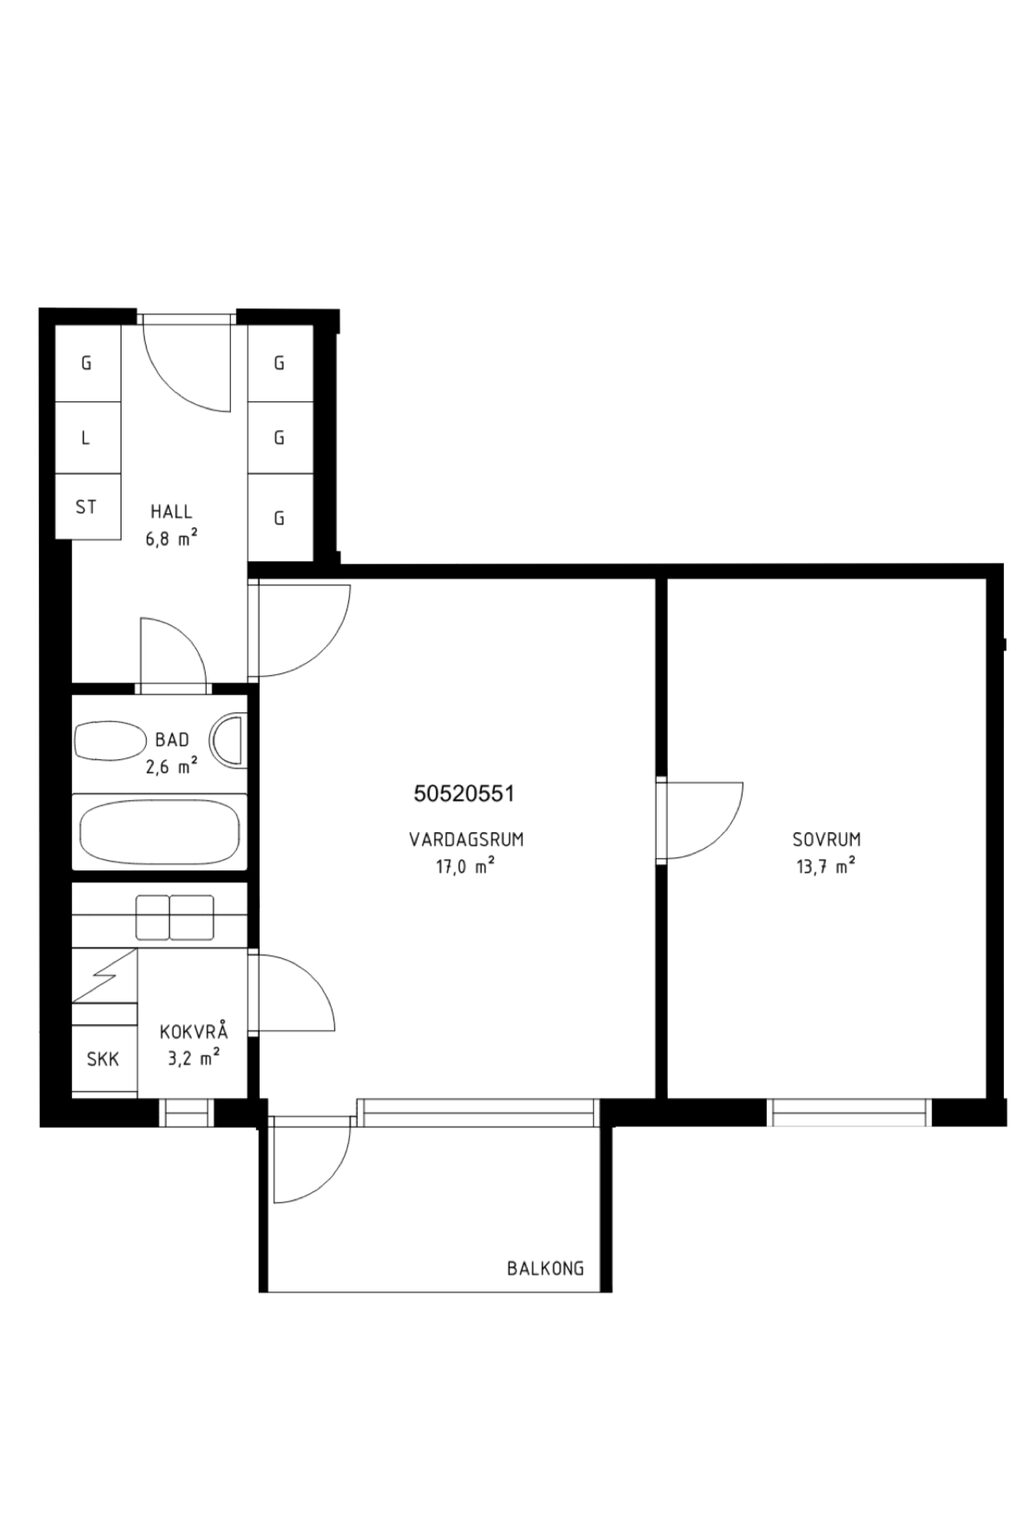 Lägenhetsbyte - Molkomsbacken 39, 123 33 Farsta